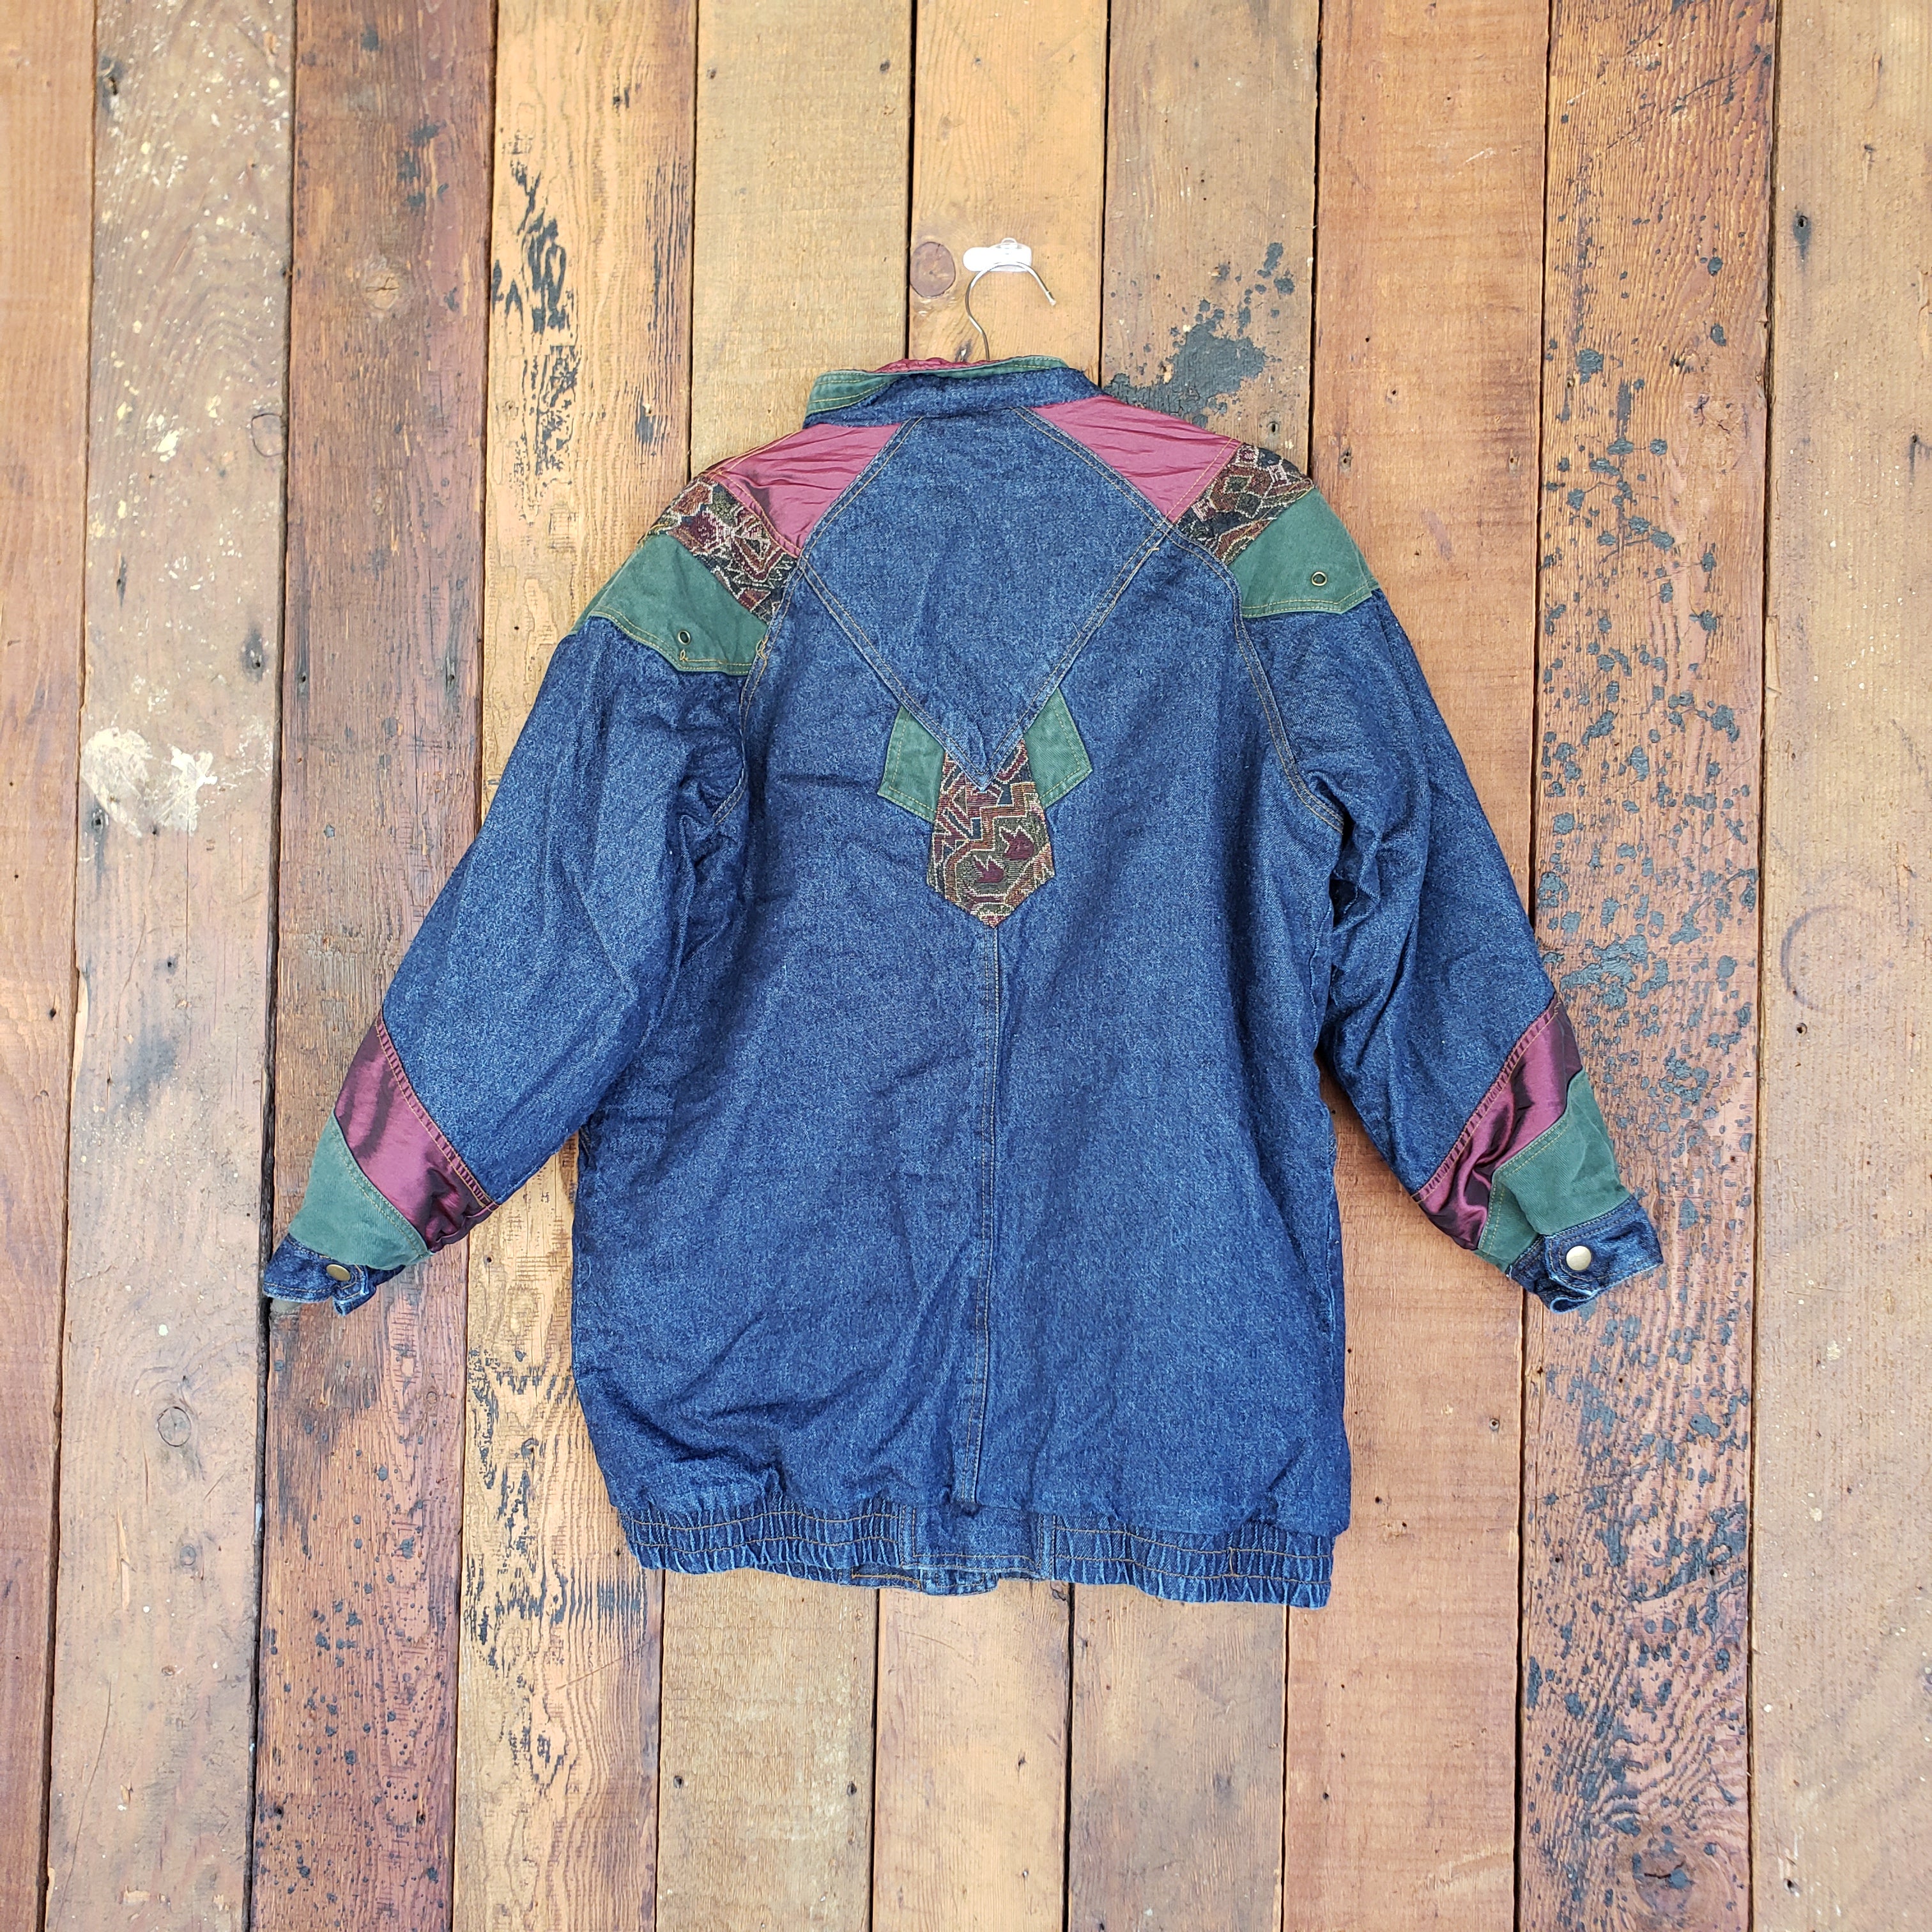 Vintage 90s Does 70s Patchwork Denim Jacket // Velvet Floral 